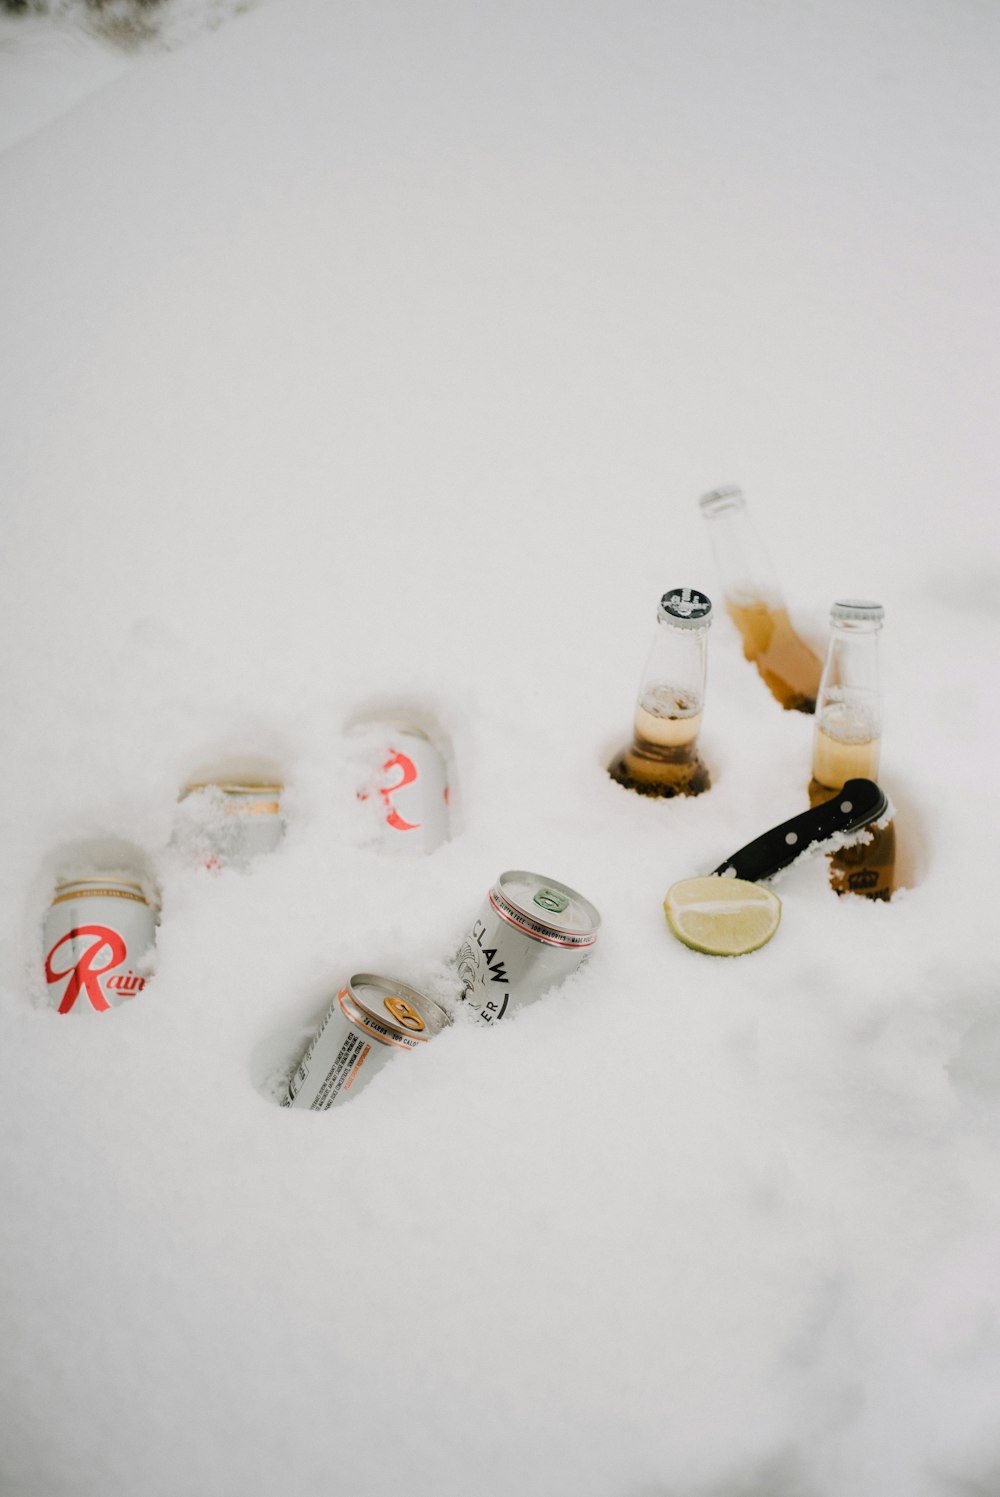 Klarglasflaschen auf weißem Schnee